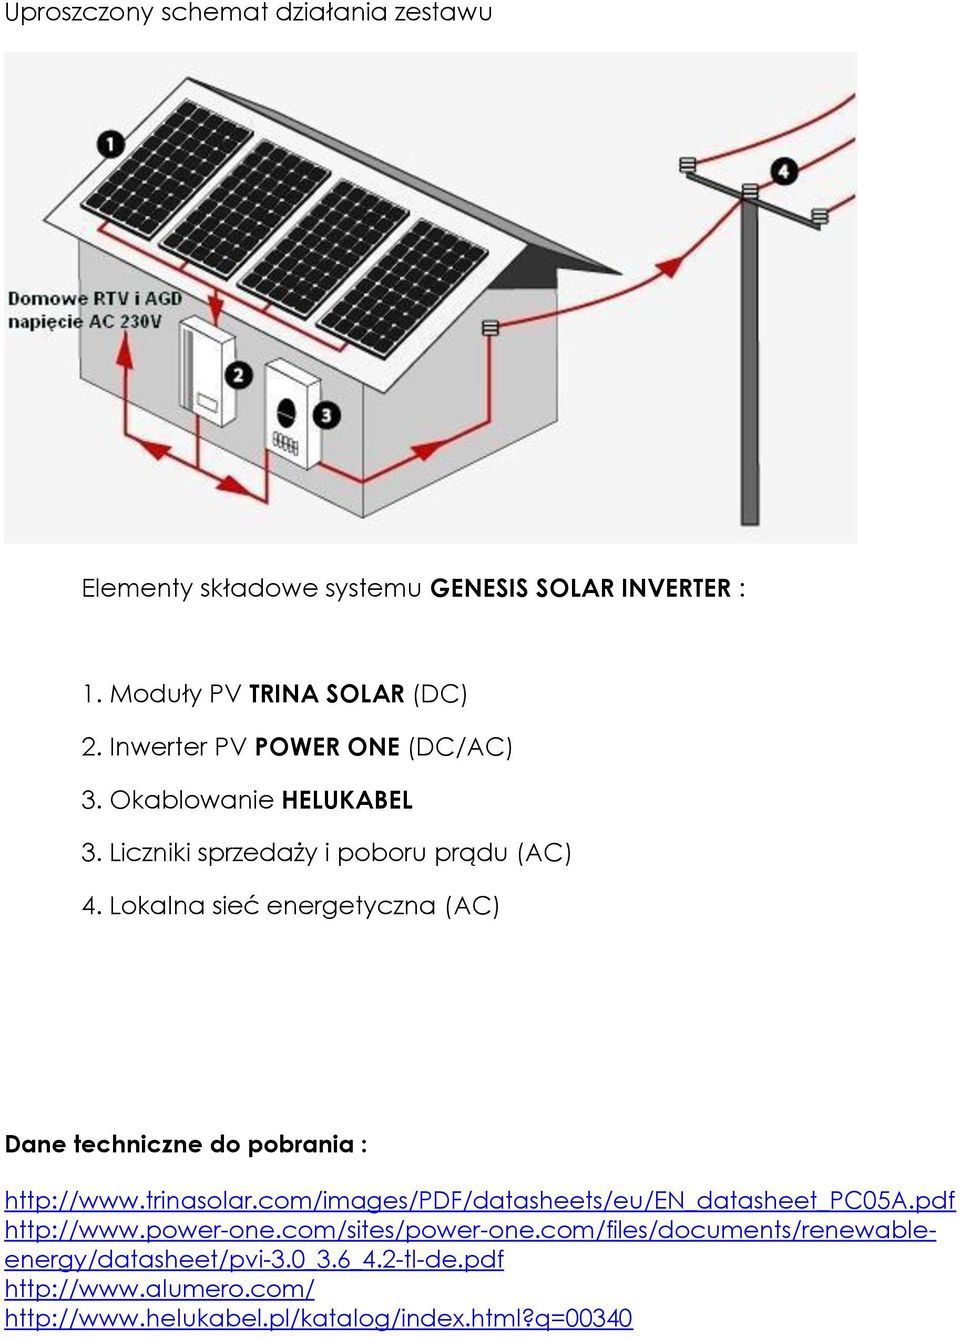 Lokalna sieć energetyczna (AC) Dane techniczne do pobrania : http://www.trinasolar.com/images/pdf/datasheets/eu/en_datasheet_pc05a.